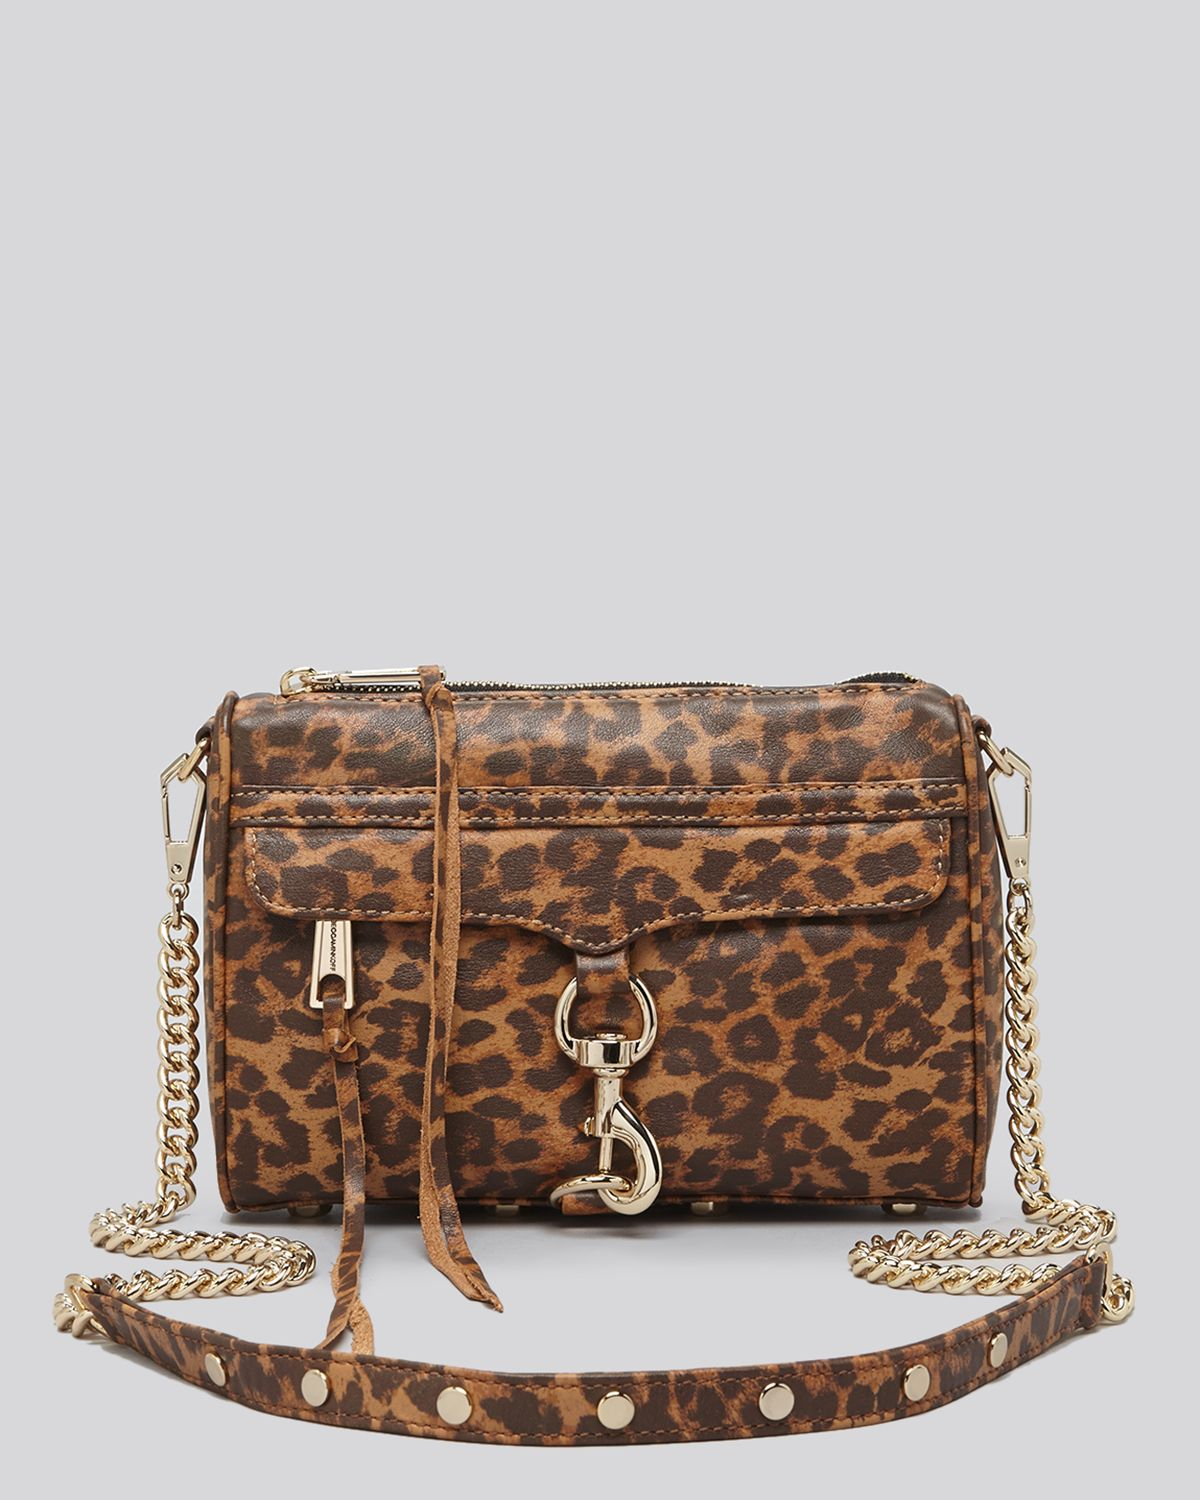 Rebecca Minkoff Leopard-Print Leather Shoulder Bag in Leopard/Light ...